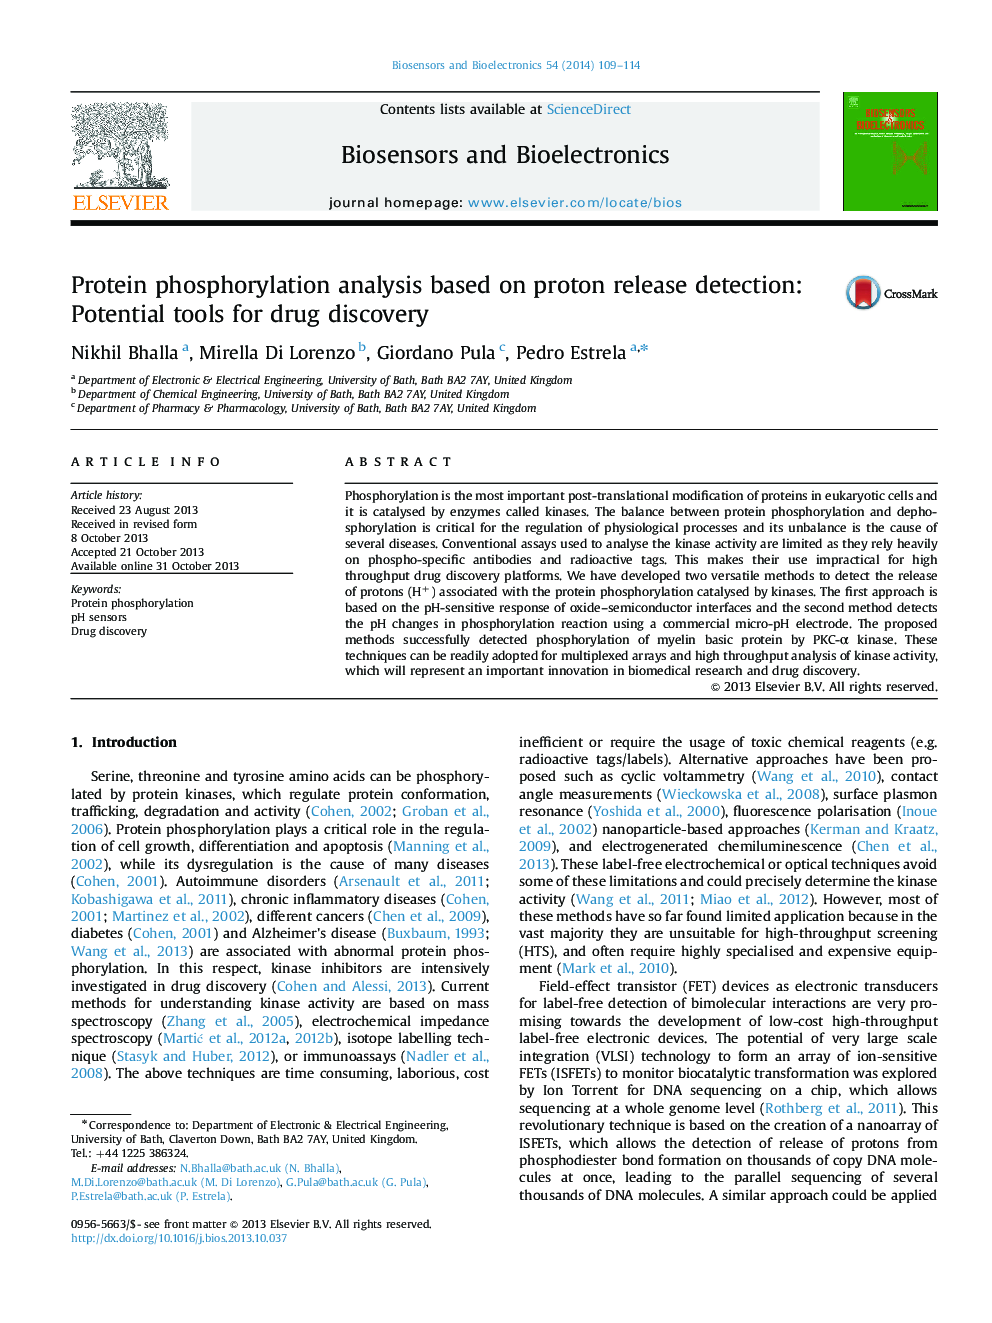 تجزیه و تحلیل فسفوریلاسیون پروتئین براساس تشخیص آزادی پروتون: ابزارهای بالقوه برای کشف مواد مخدر 